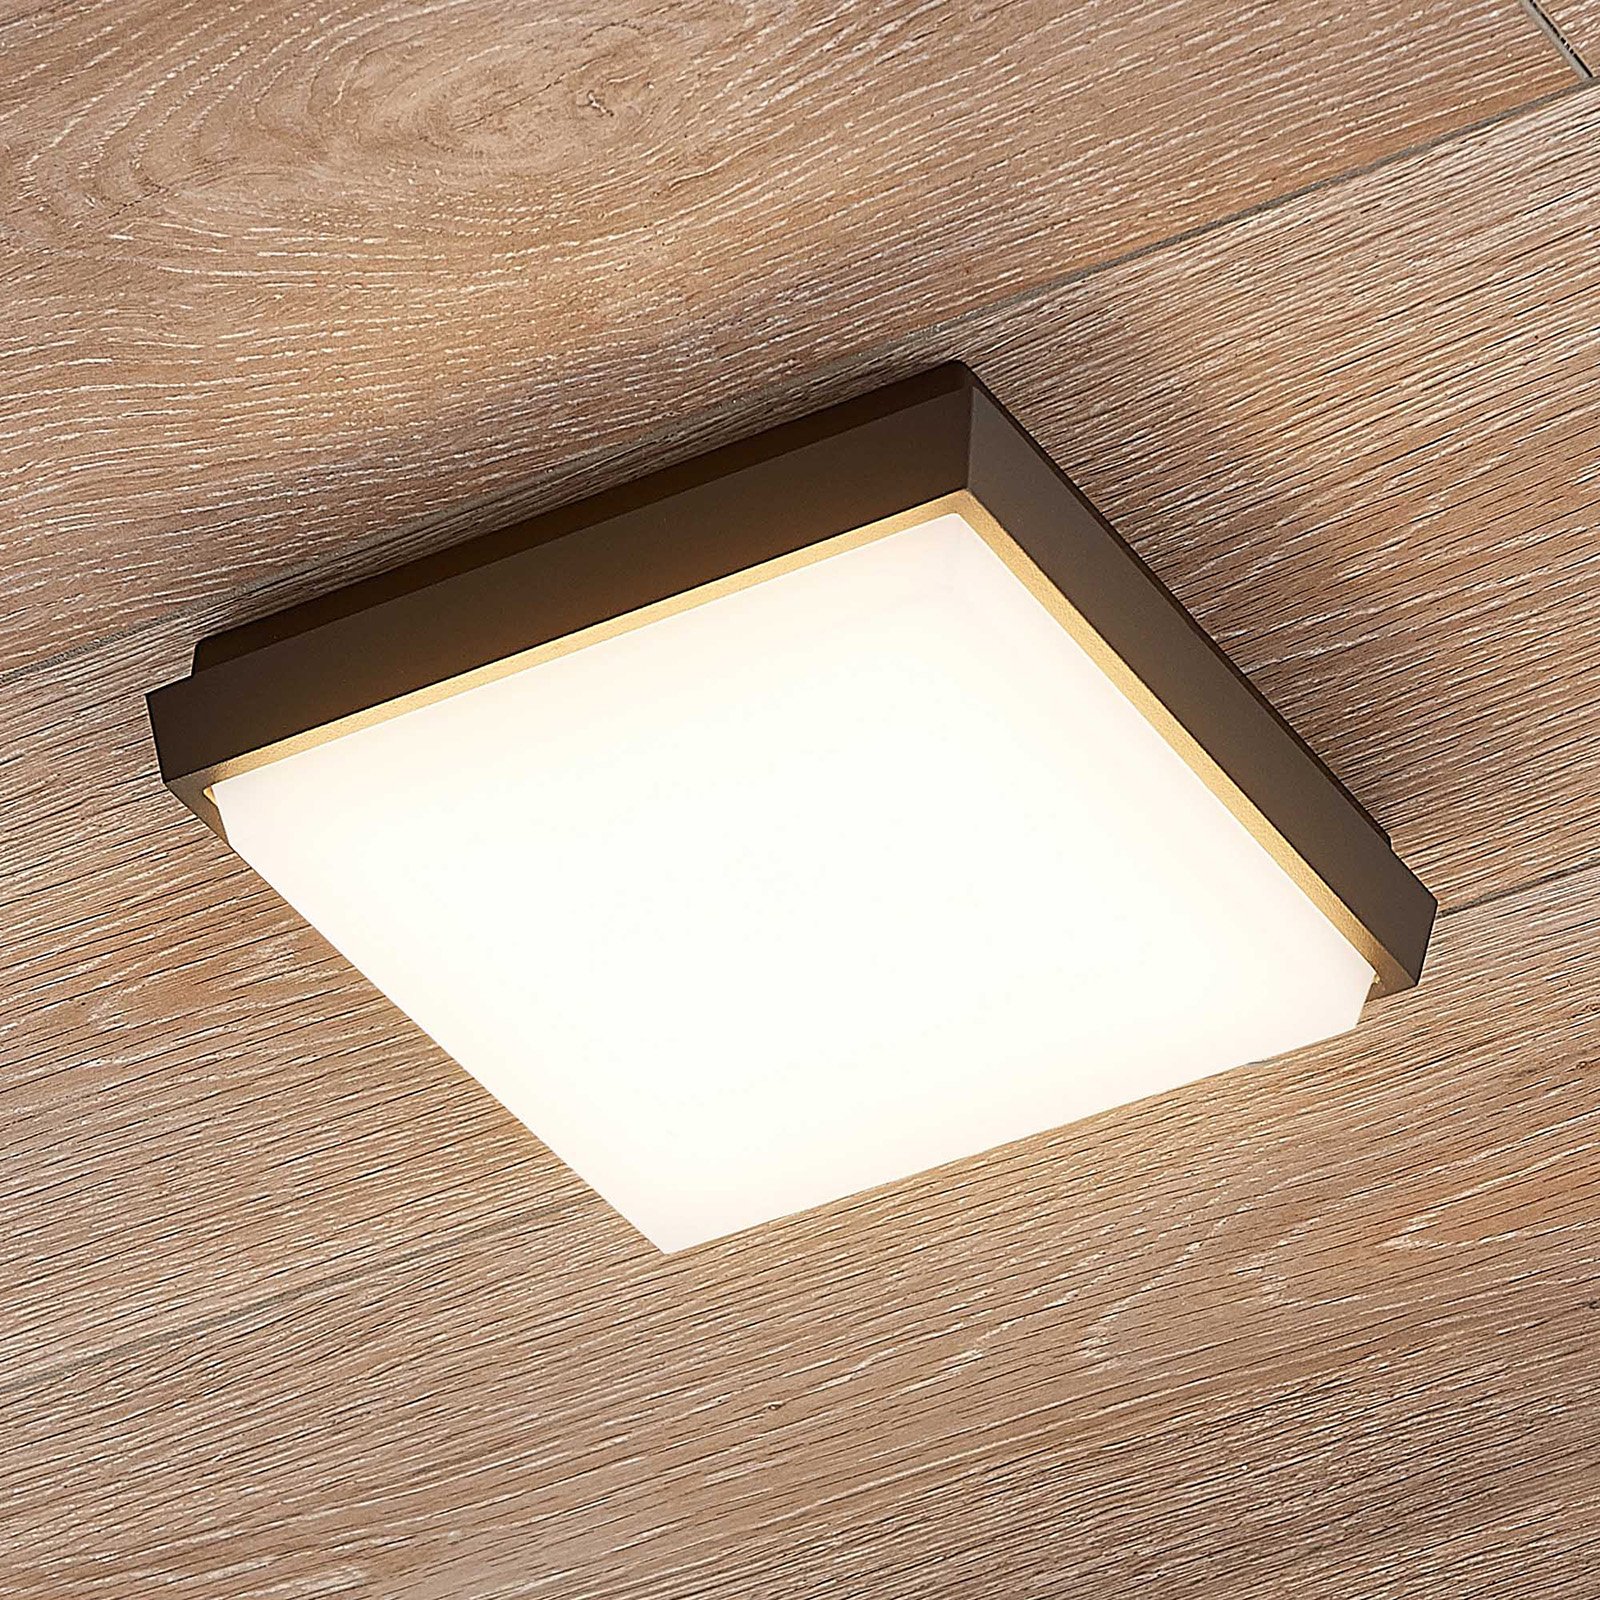 Amra LED outdoor ceiling light angular 17.5 cm